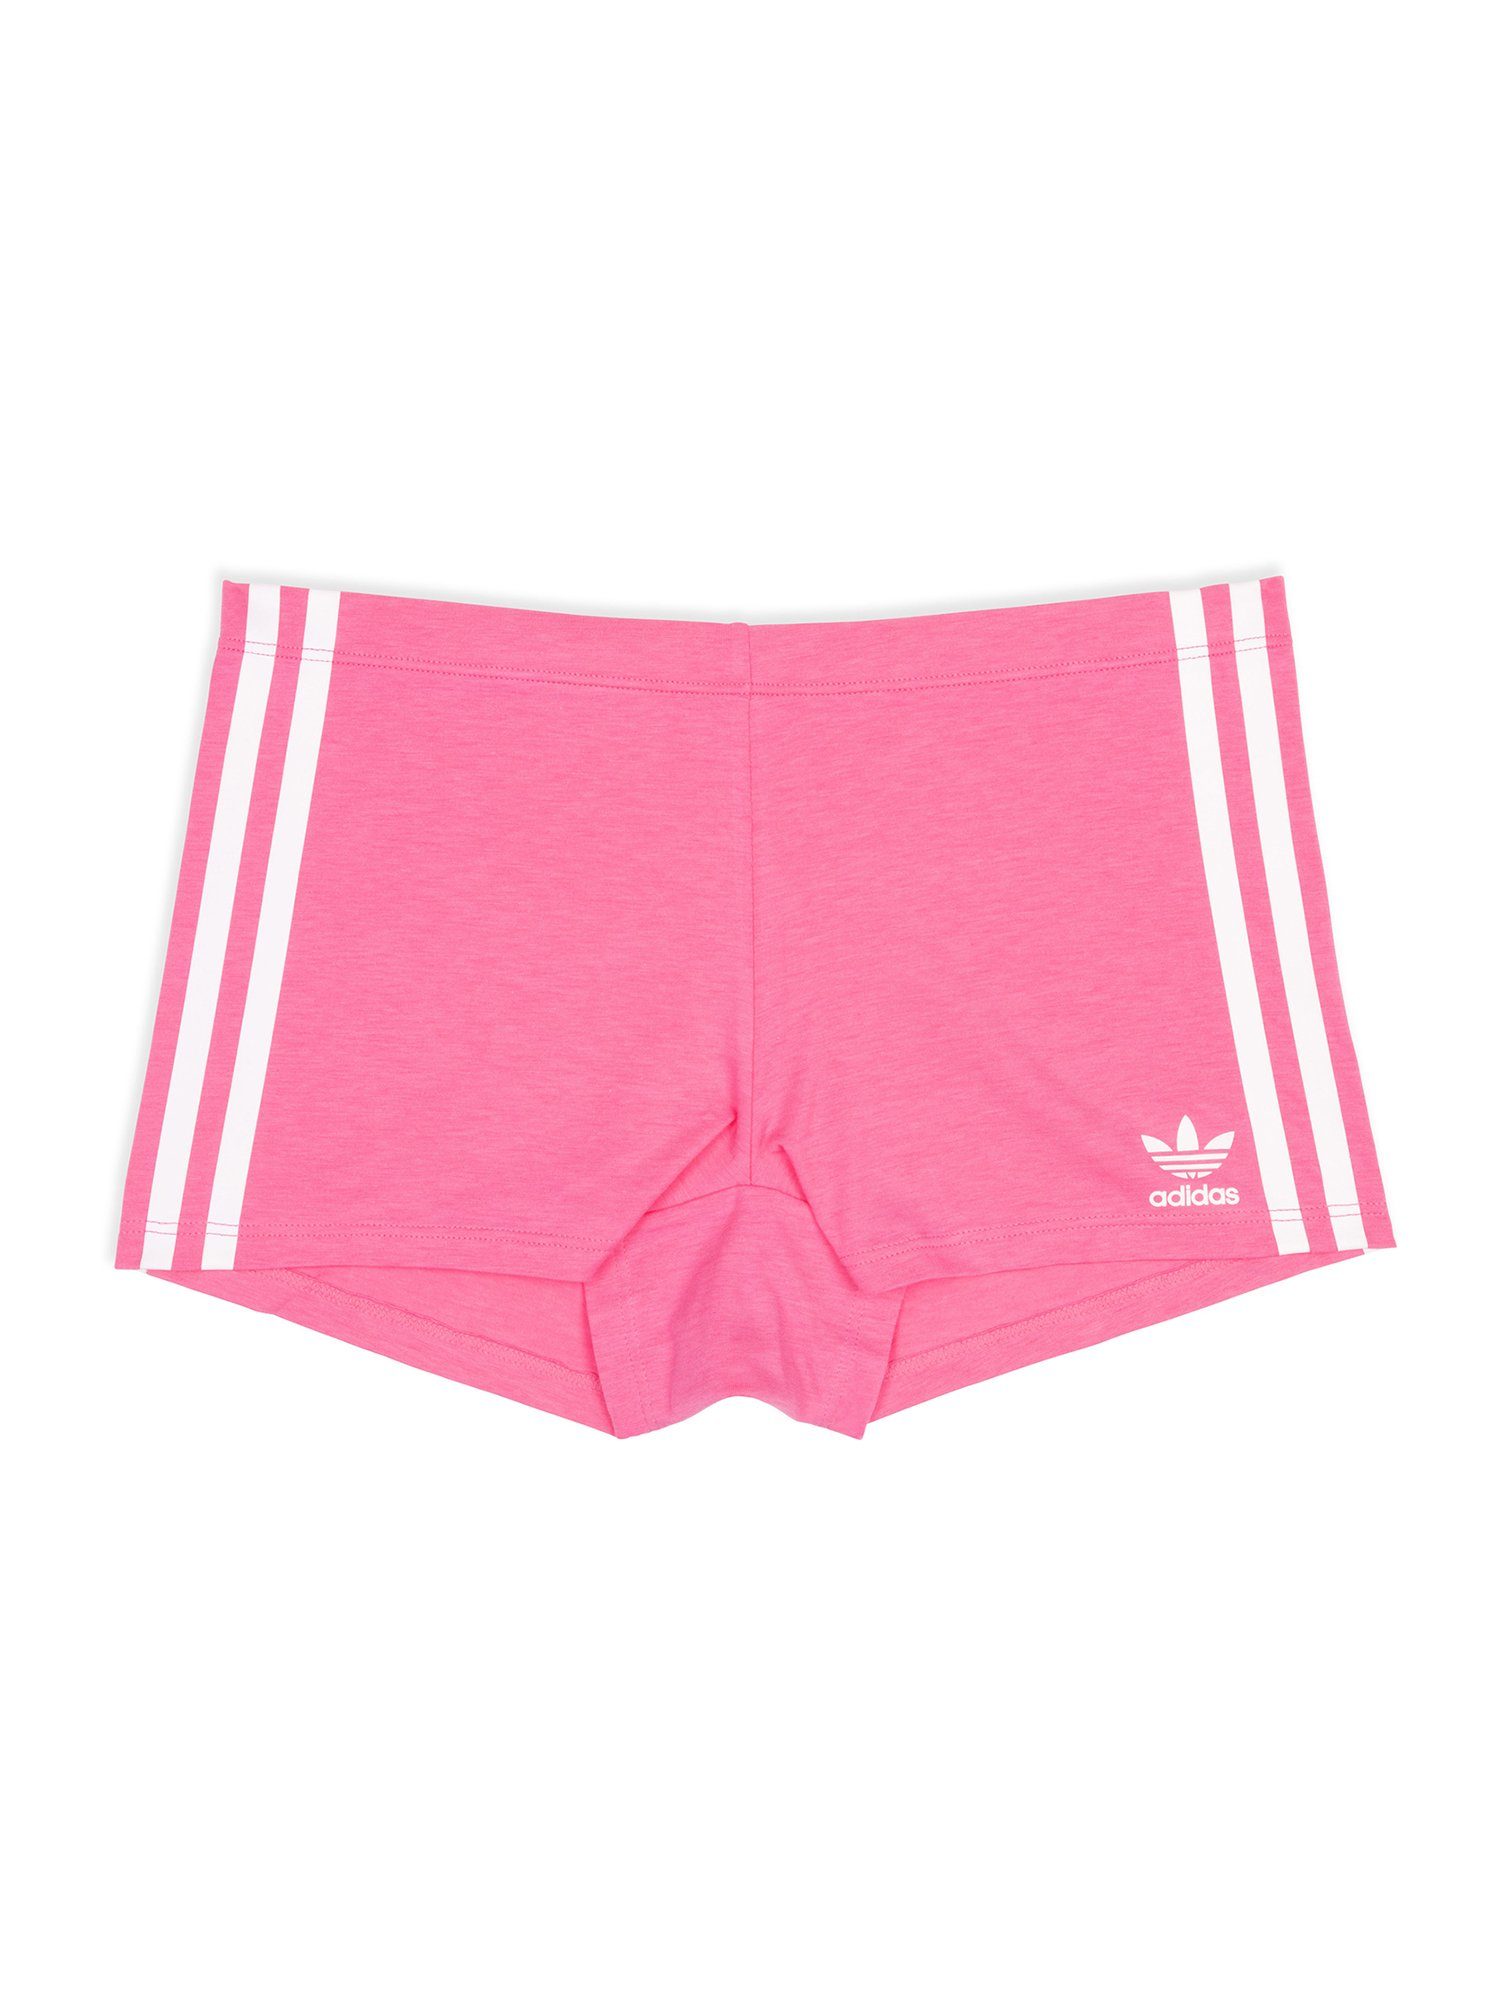 adidas Originals Boxer Biker pink lucid boxershort unterhose Short unterwäsche